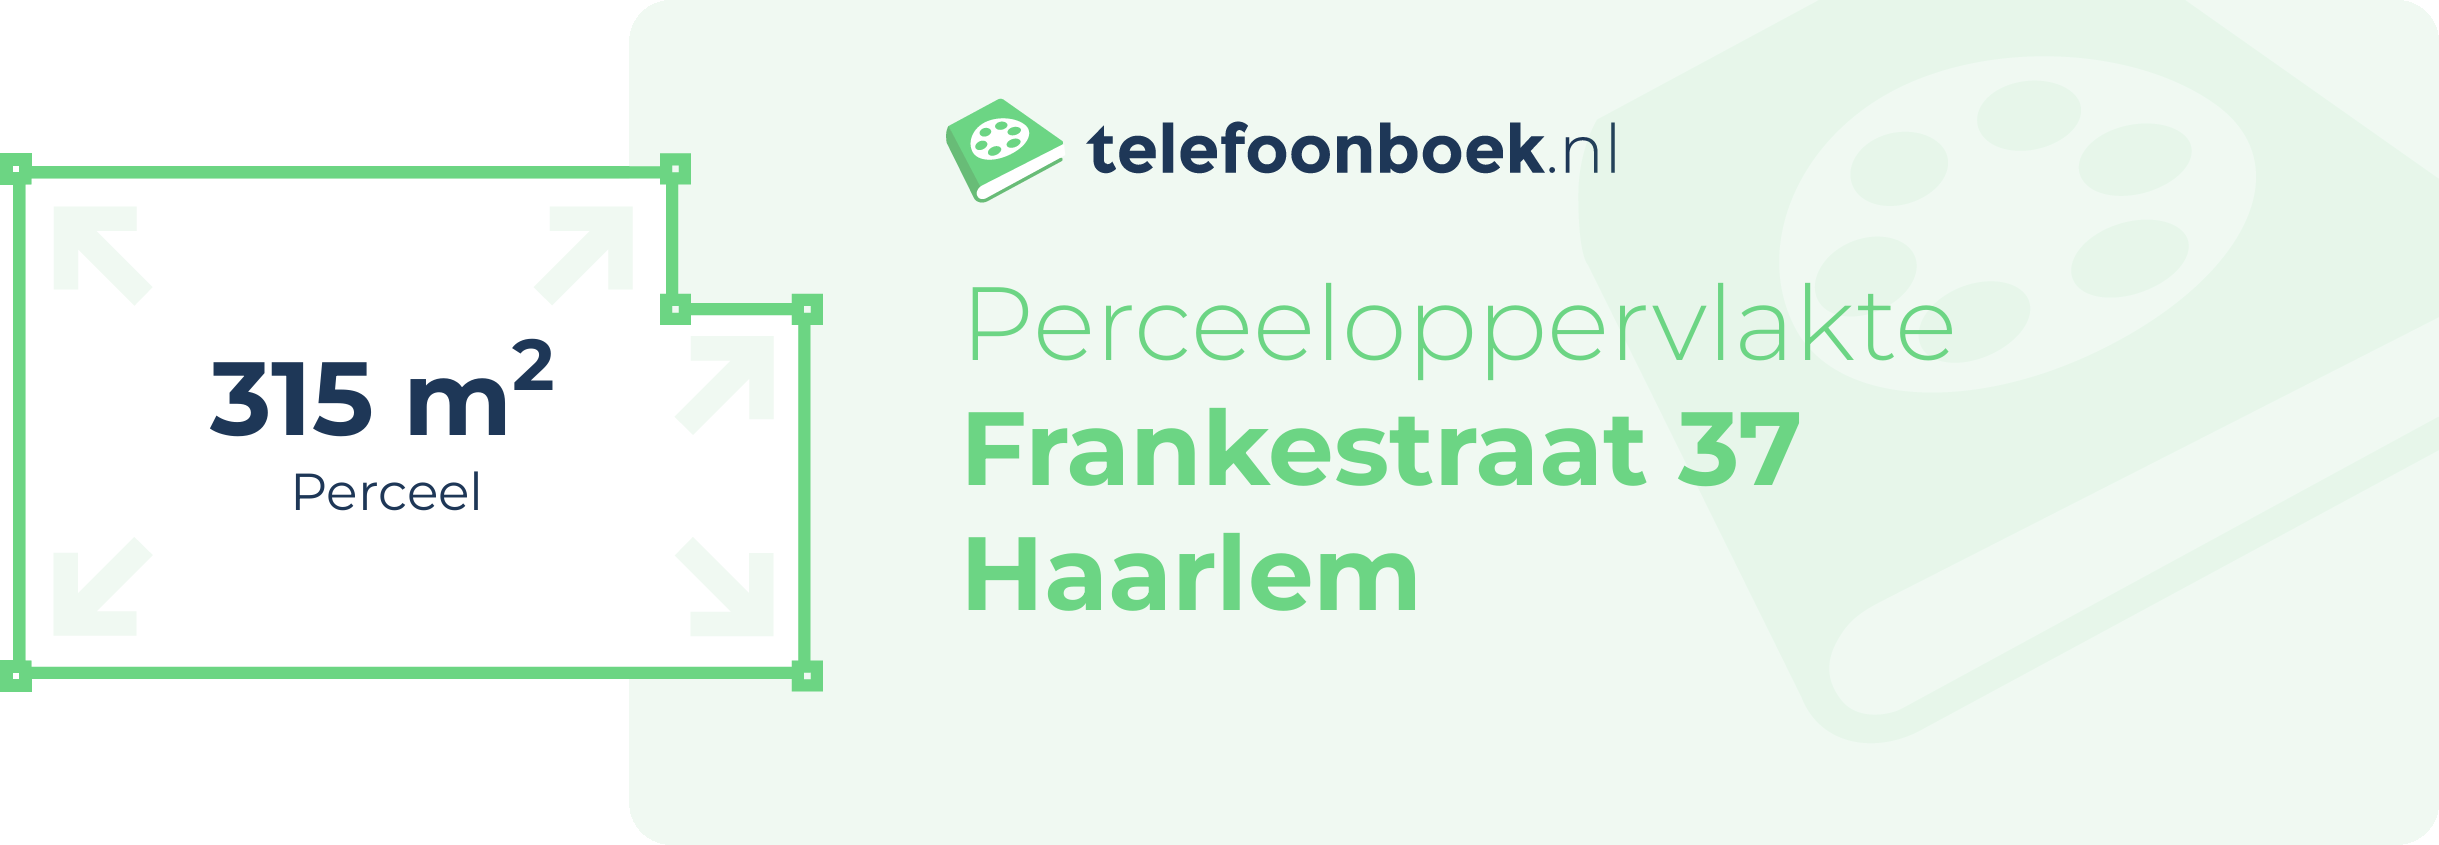 Perceeloppervlakte Frankestraat 37 Haarlem